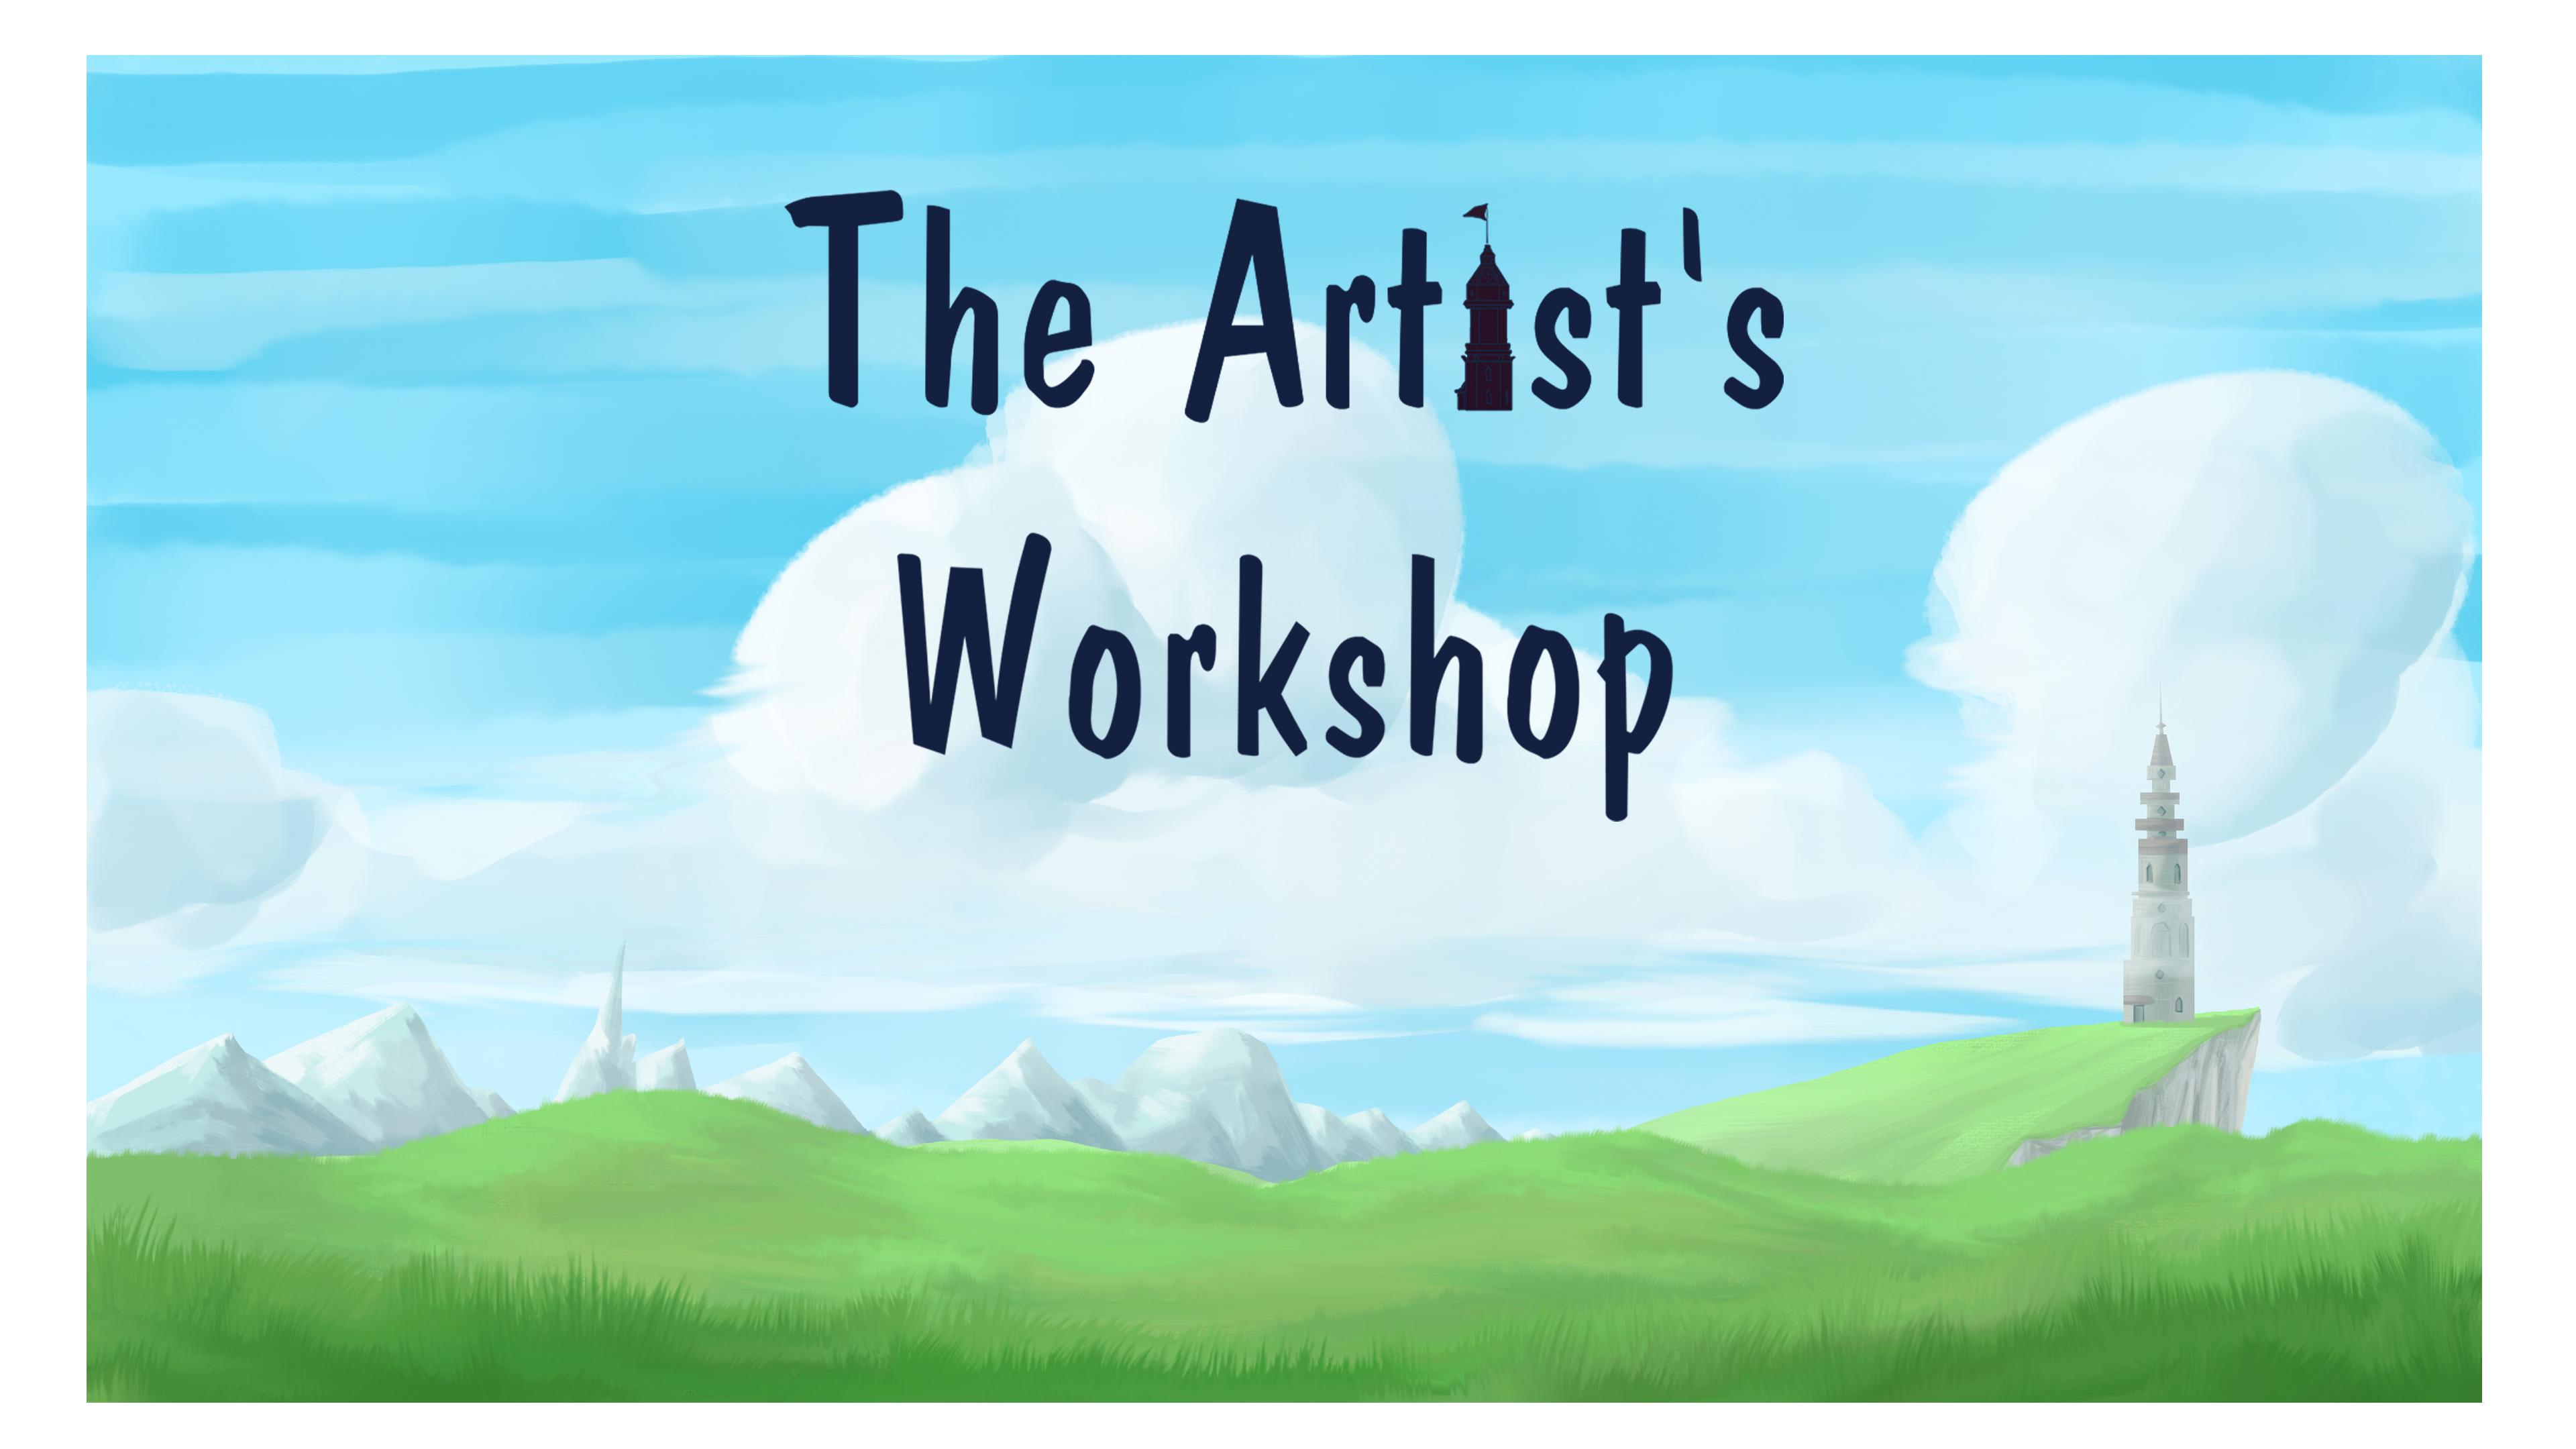 The Artist's Workshop Image